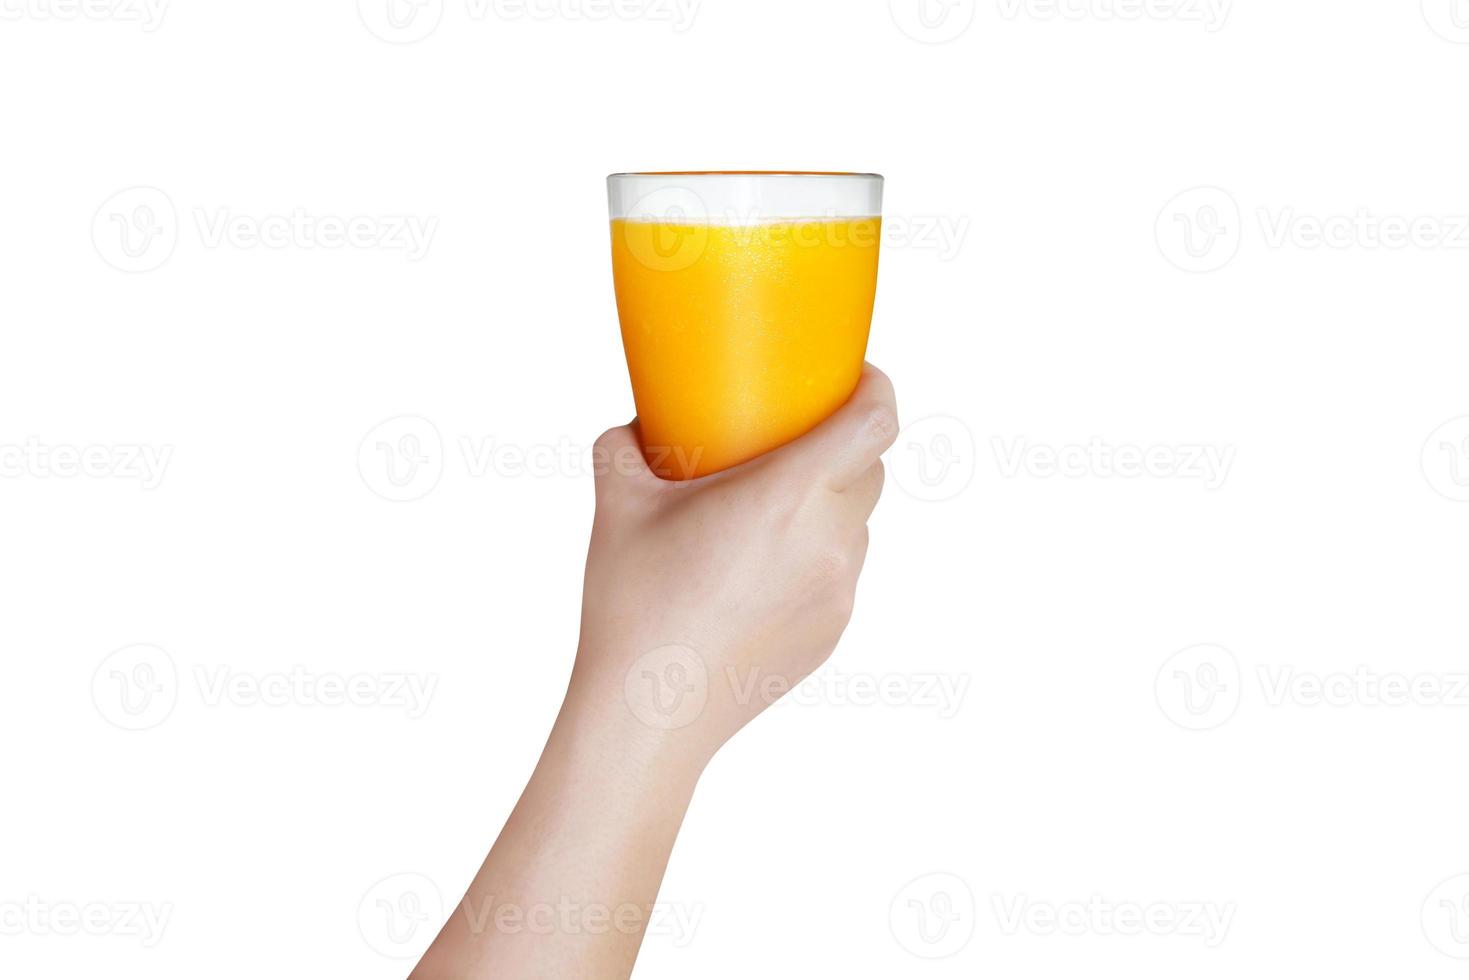 vrouw hand- Holding een glas van oranje sap met wit achtergrond de concept van vers geperst oranje sap bevat vitamine c voor Gezondheid een uitkering. foto